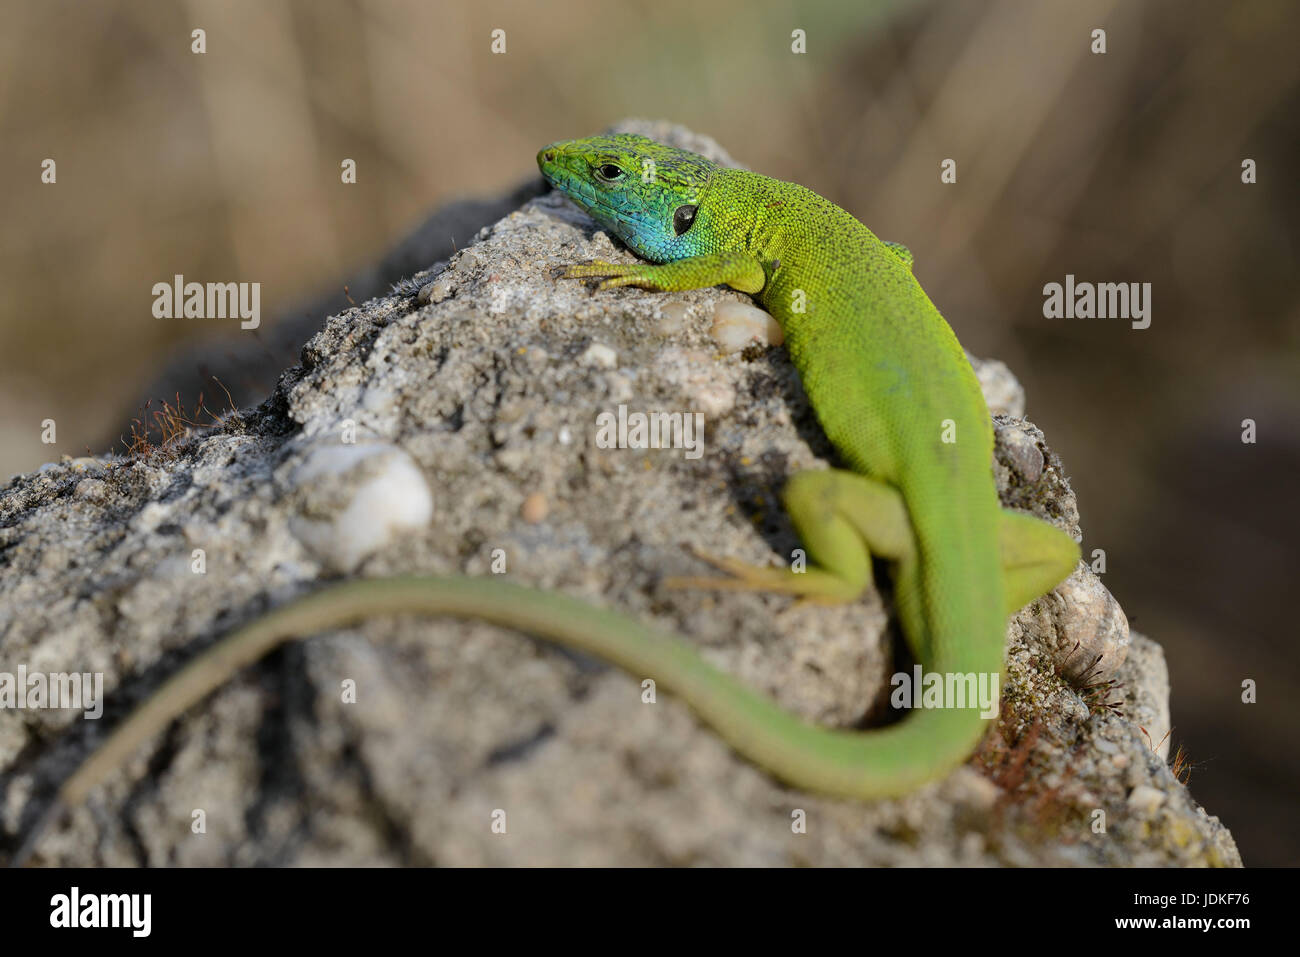 Emerald lizards little man suns itself on a stone, Smaragdeidechsen Männchen sonnt sich auf einem Stein Stock Photo